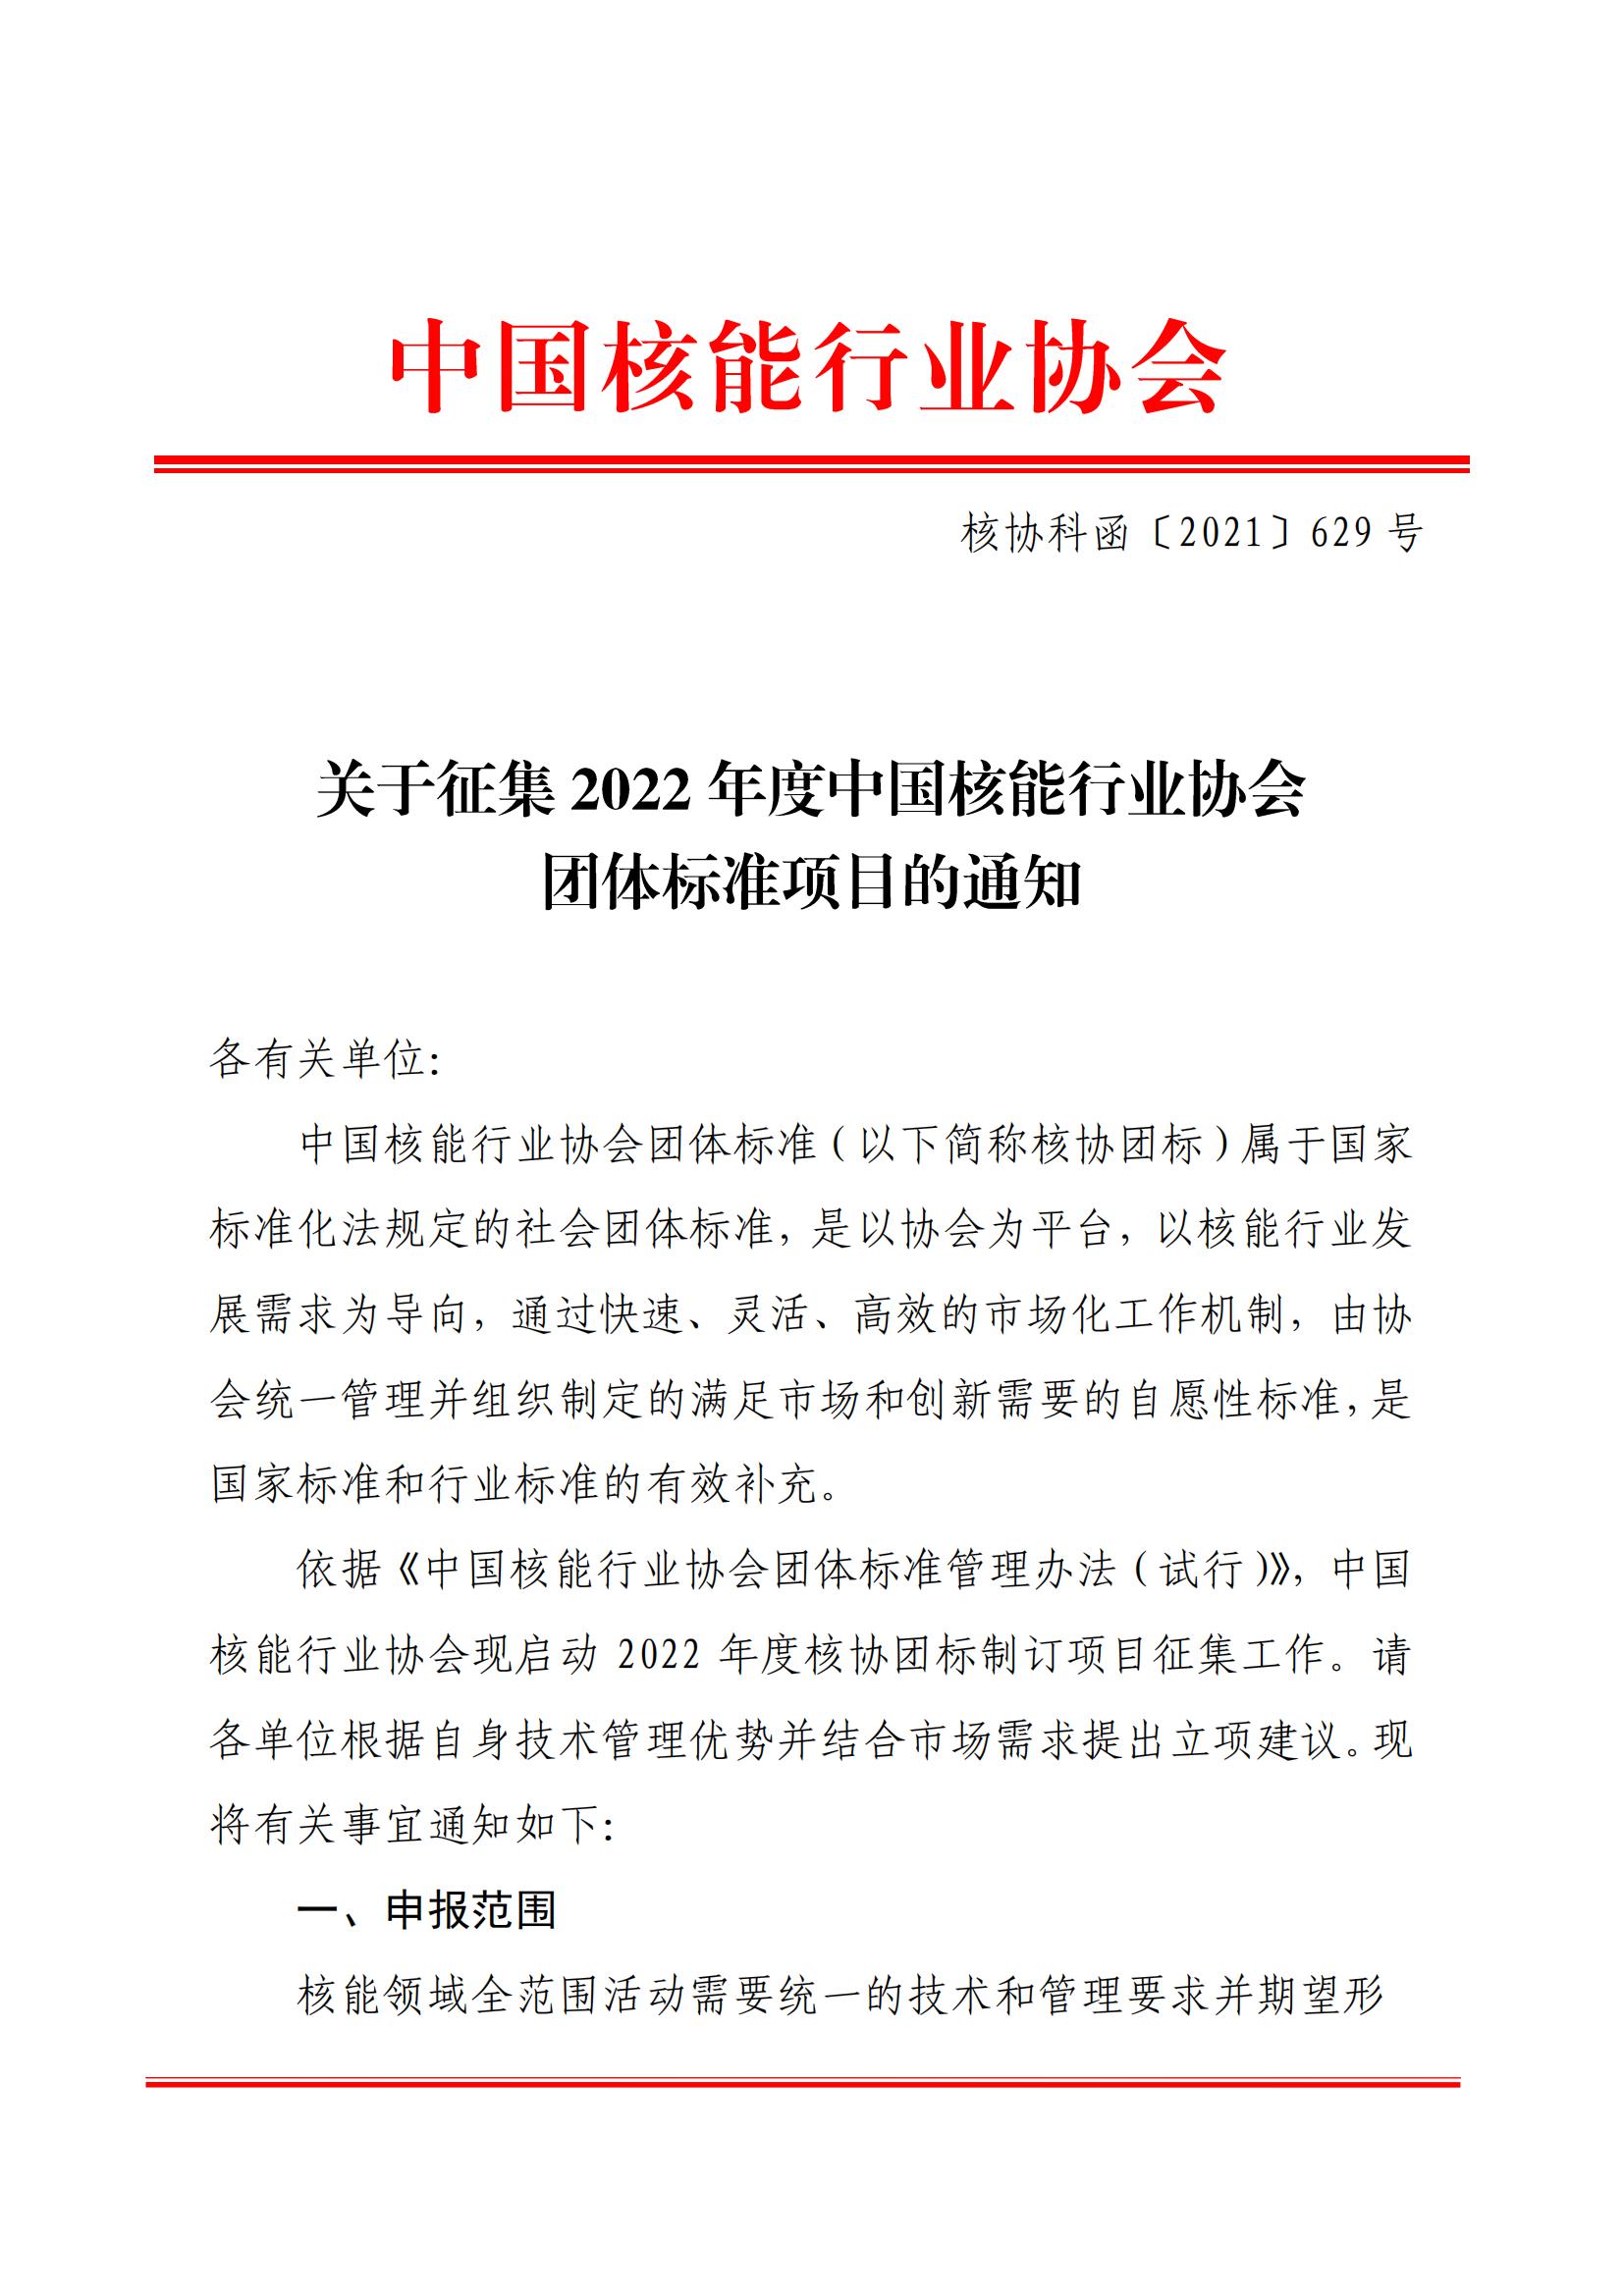 关于征集2022年度中国核能行业协会团体标准项目的通知 (1)_00.jpg